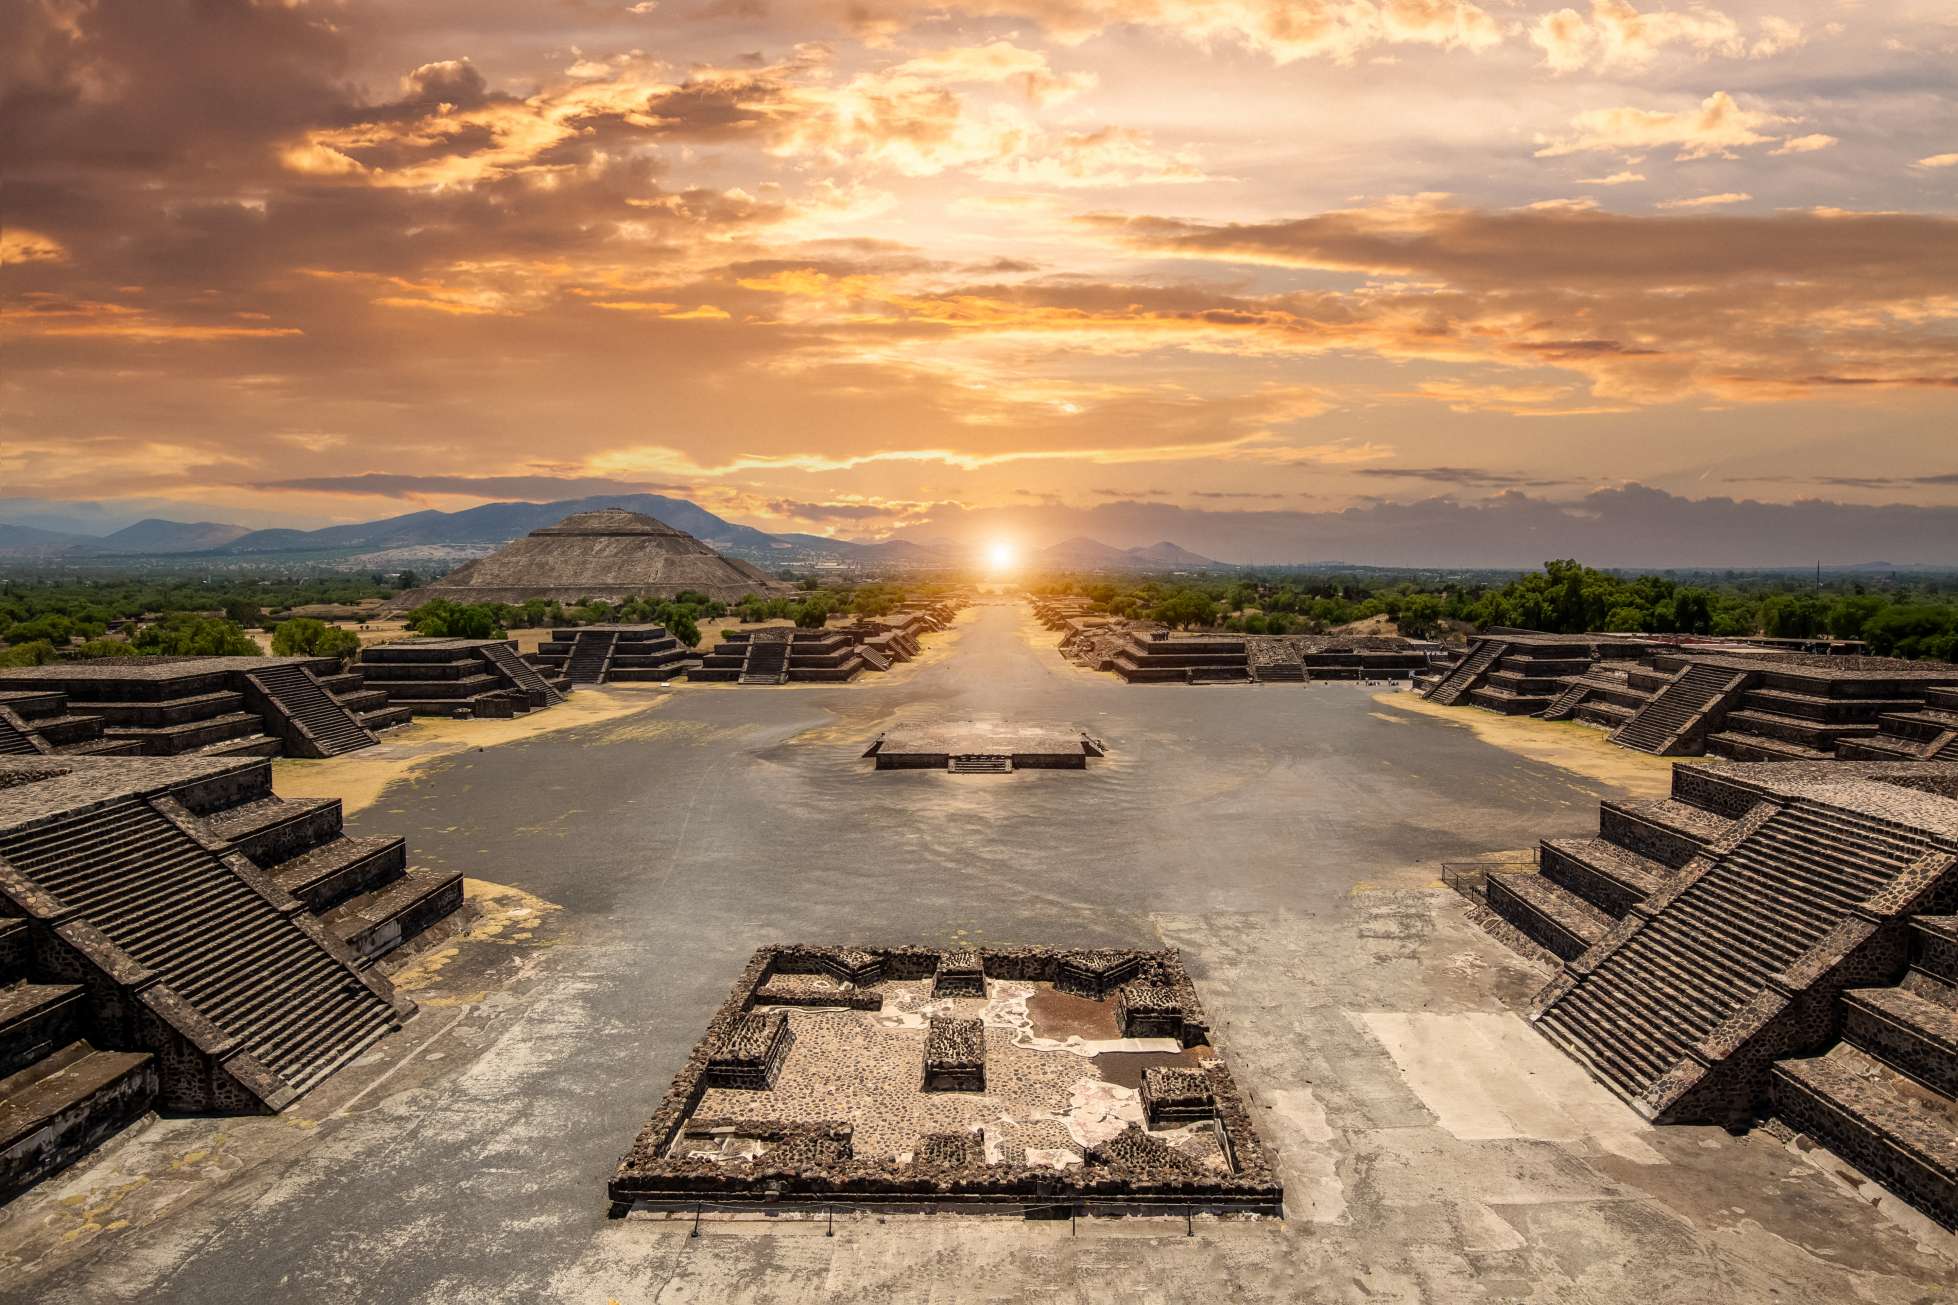 Au cœur du Mexique se trouve un site archéologique fascinant qui a intrigué les experts pendant des siècles. Teotihuacán, qui signifie "le lieu où les dieux ont été créés", abrite certaines des pyramides et des ruines les plus impressionnantes de toute l'Amérique centrale. Le complexe des pyramides de Teotihuacán est situé dans les hauts plateaux mexicains et la vallée de Mexico, près de Mexico. © iStock